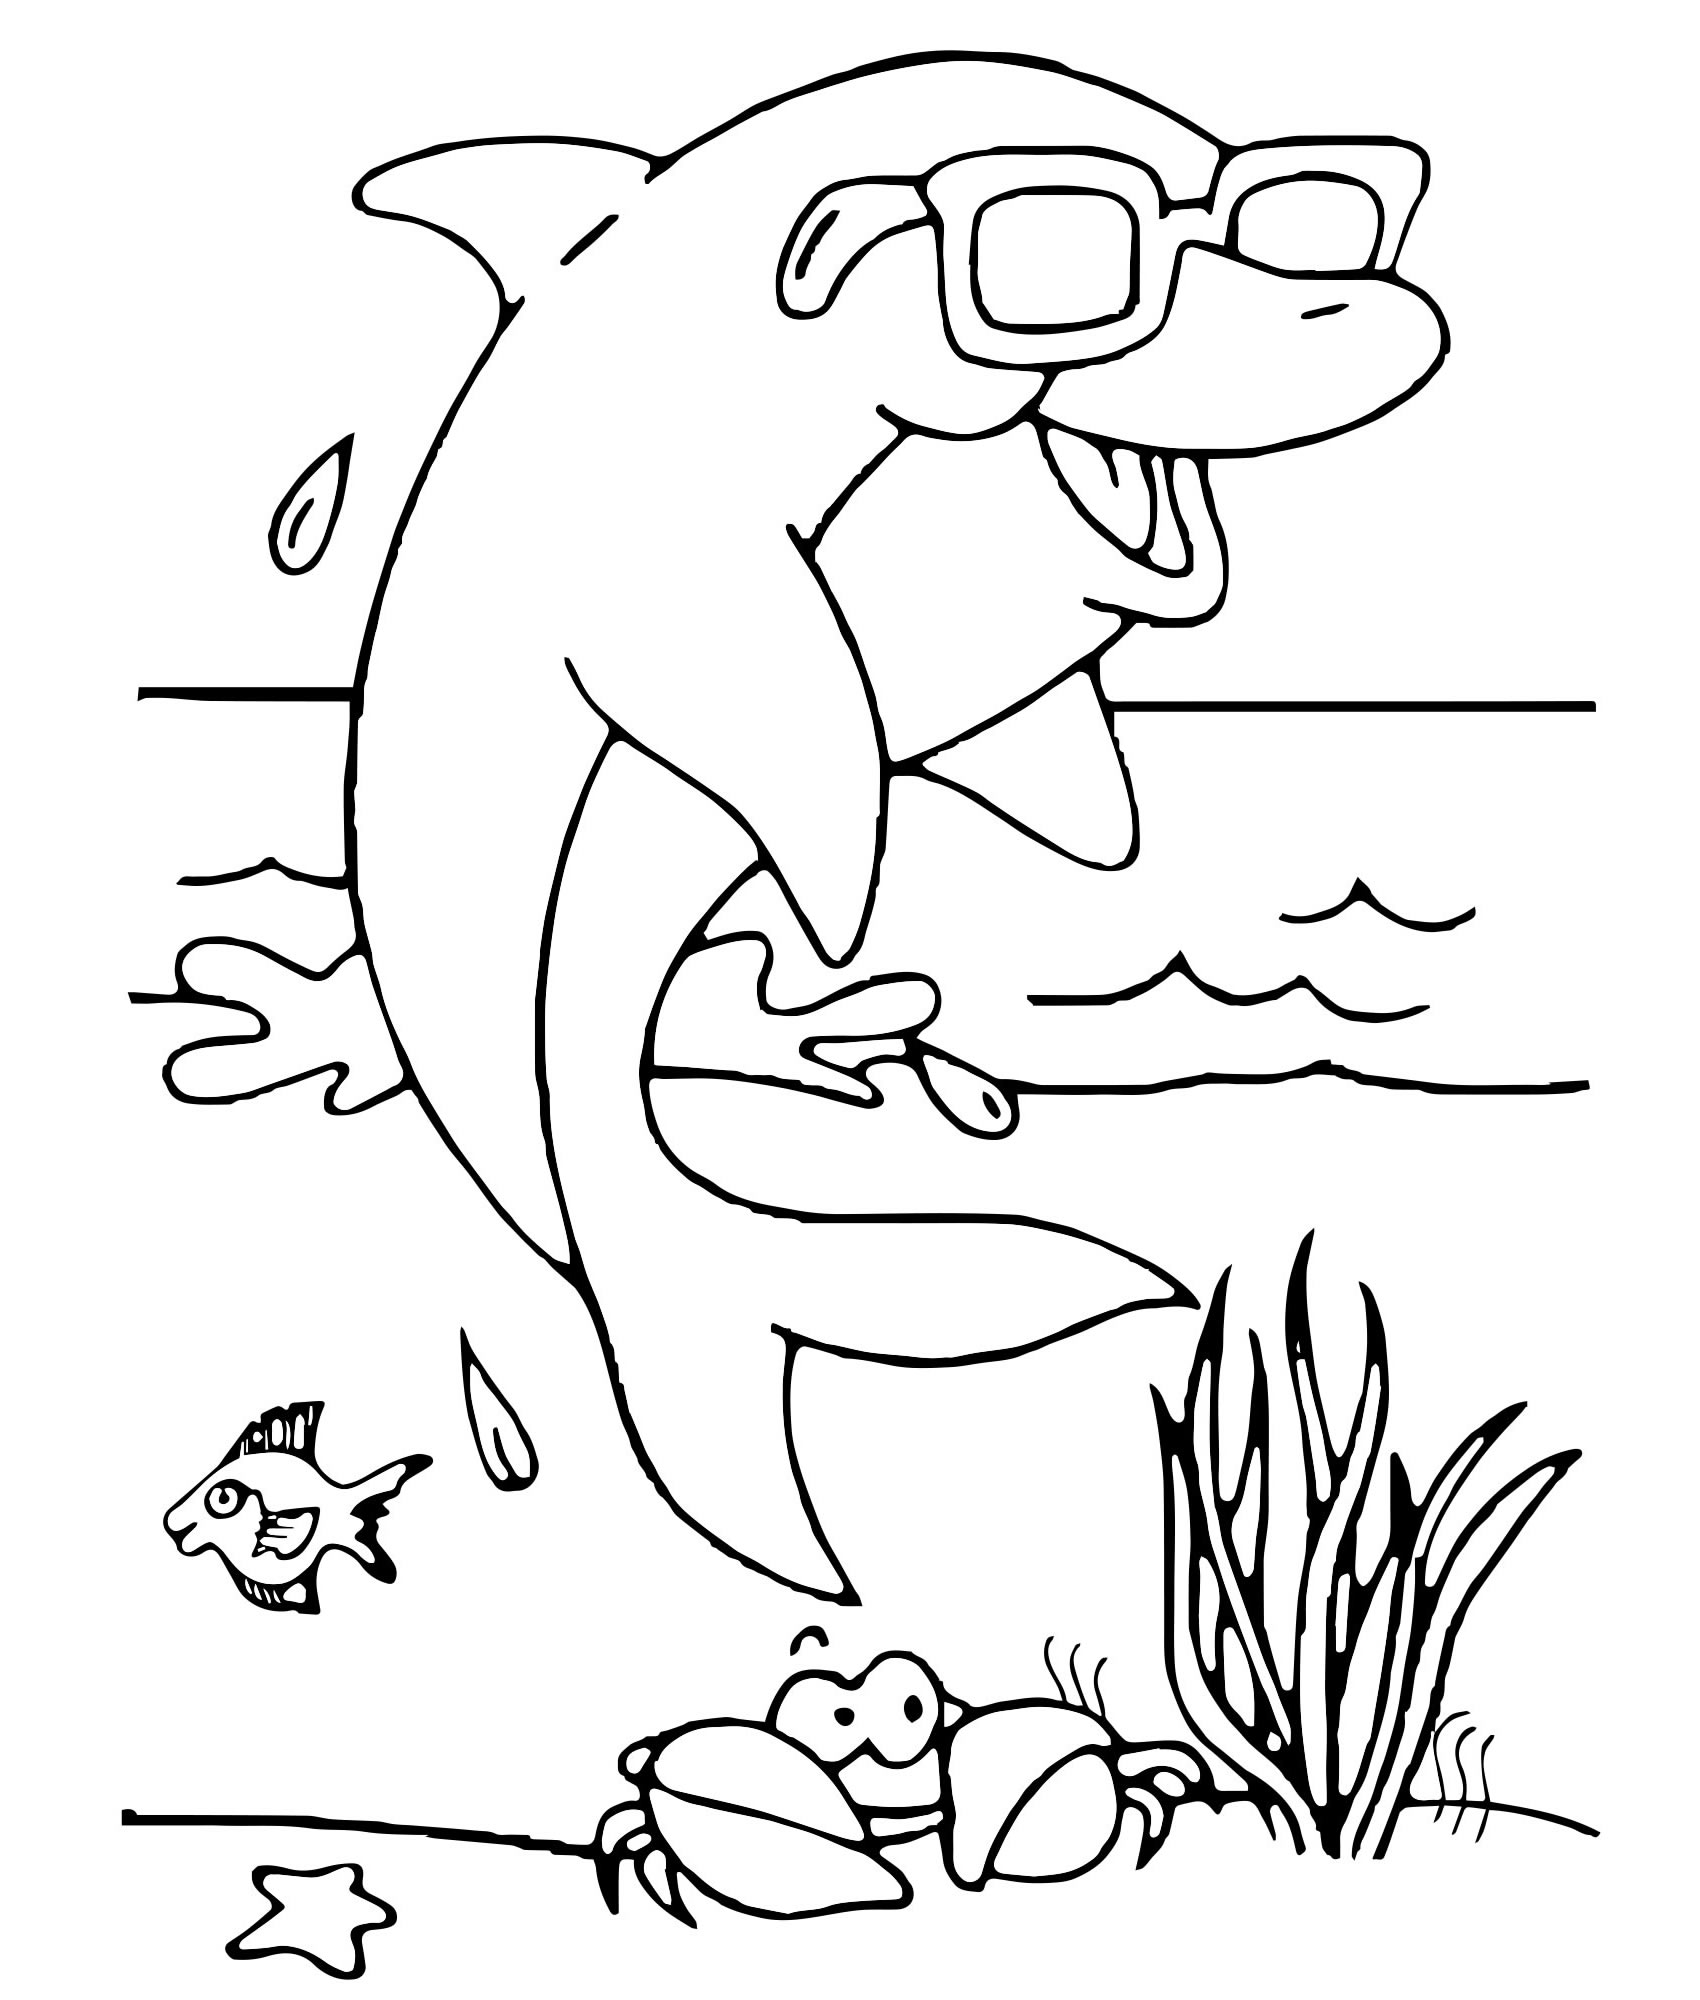 Раскраска Дельфин для детей ♥ Онлайн и Распечатать Бесплатно!